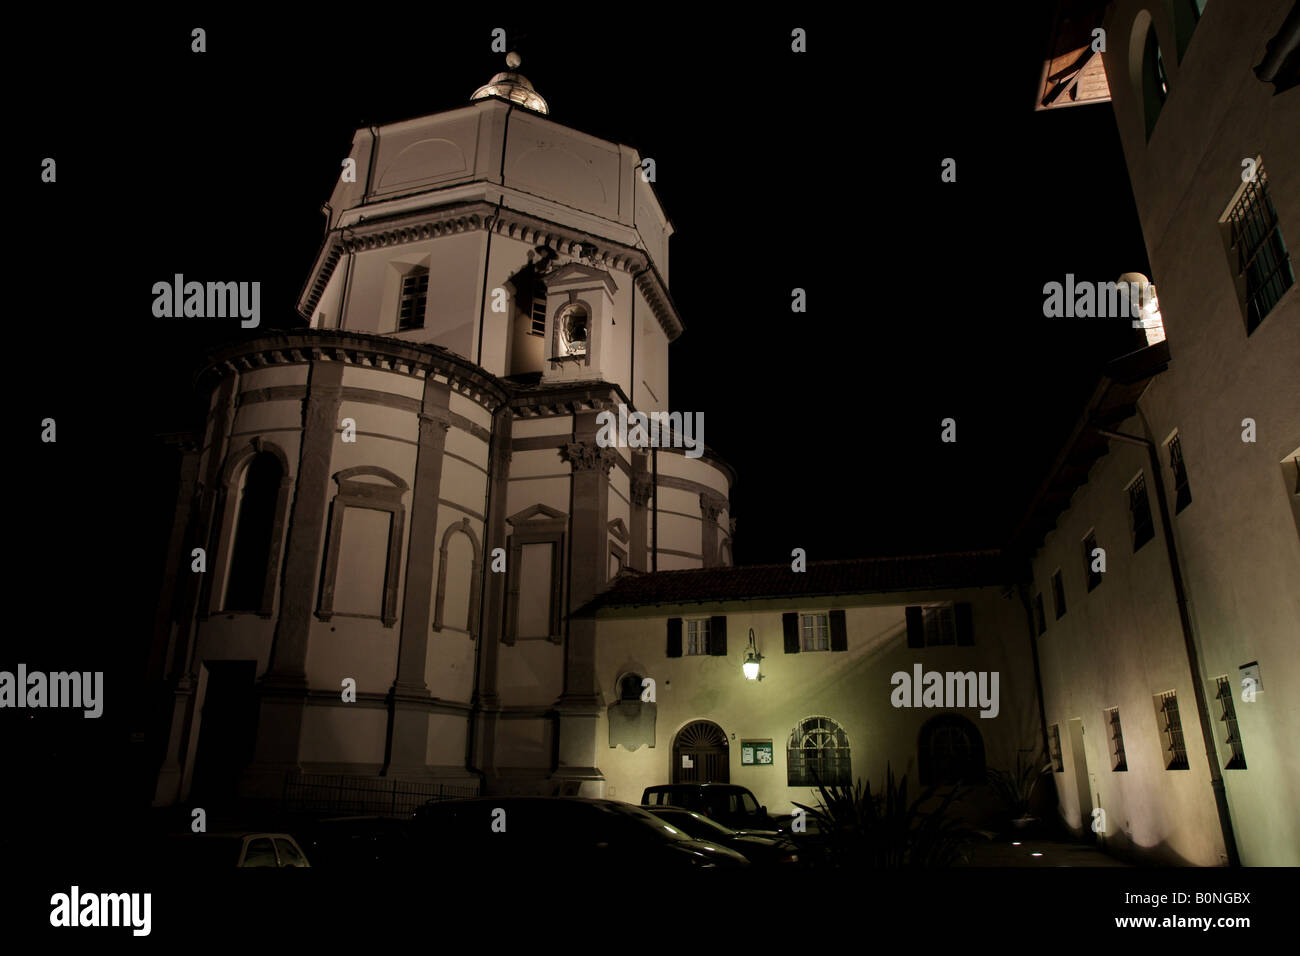 Montagna Museum und Cappuccini Kirche in der Nacht. Stockfoto